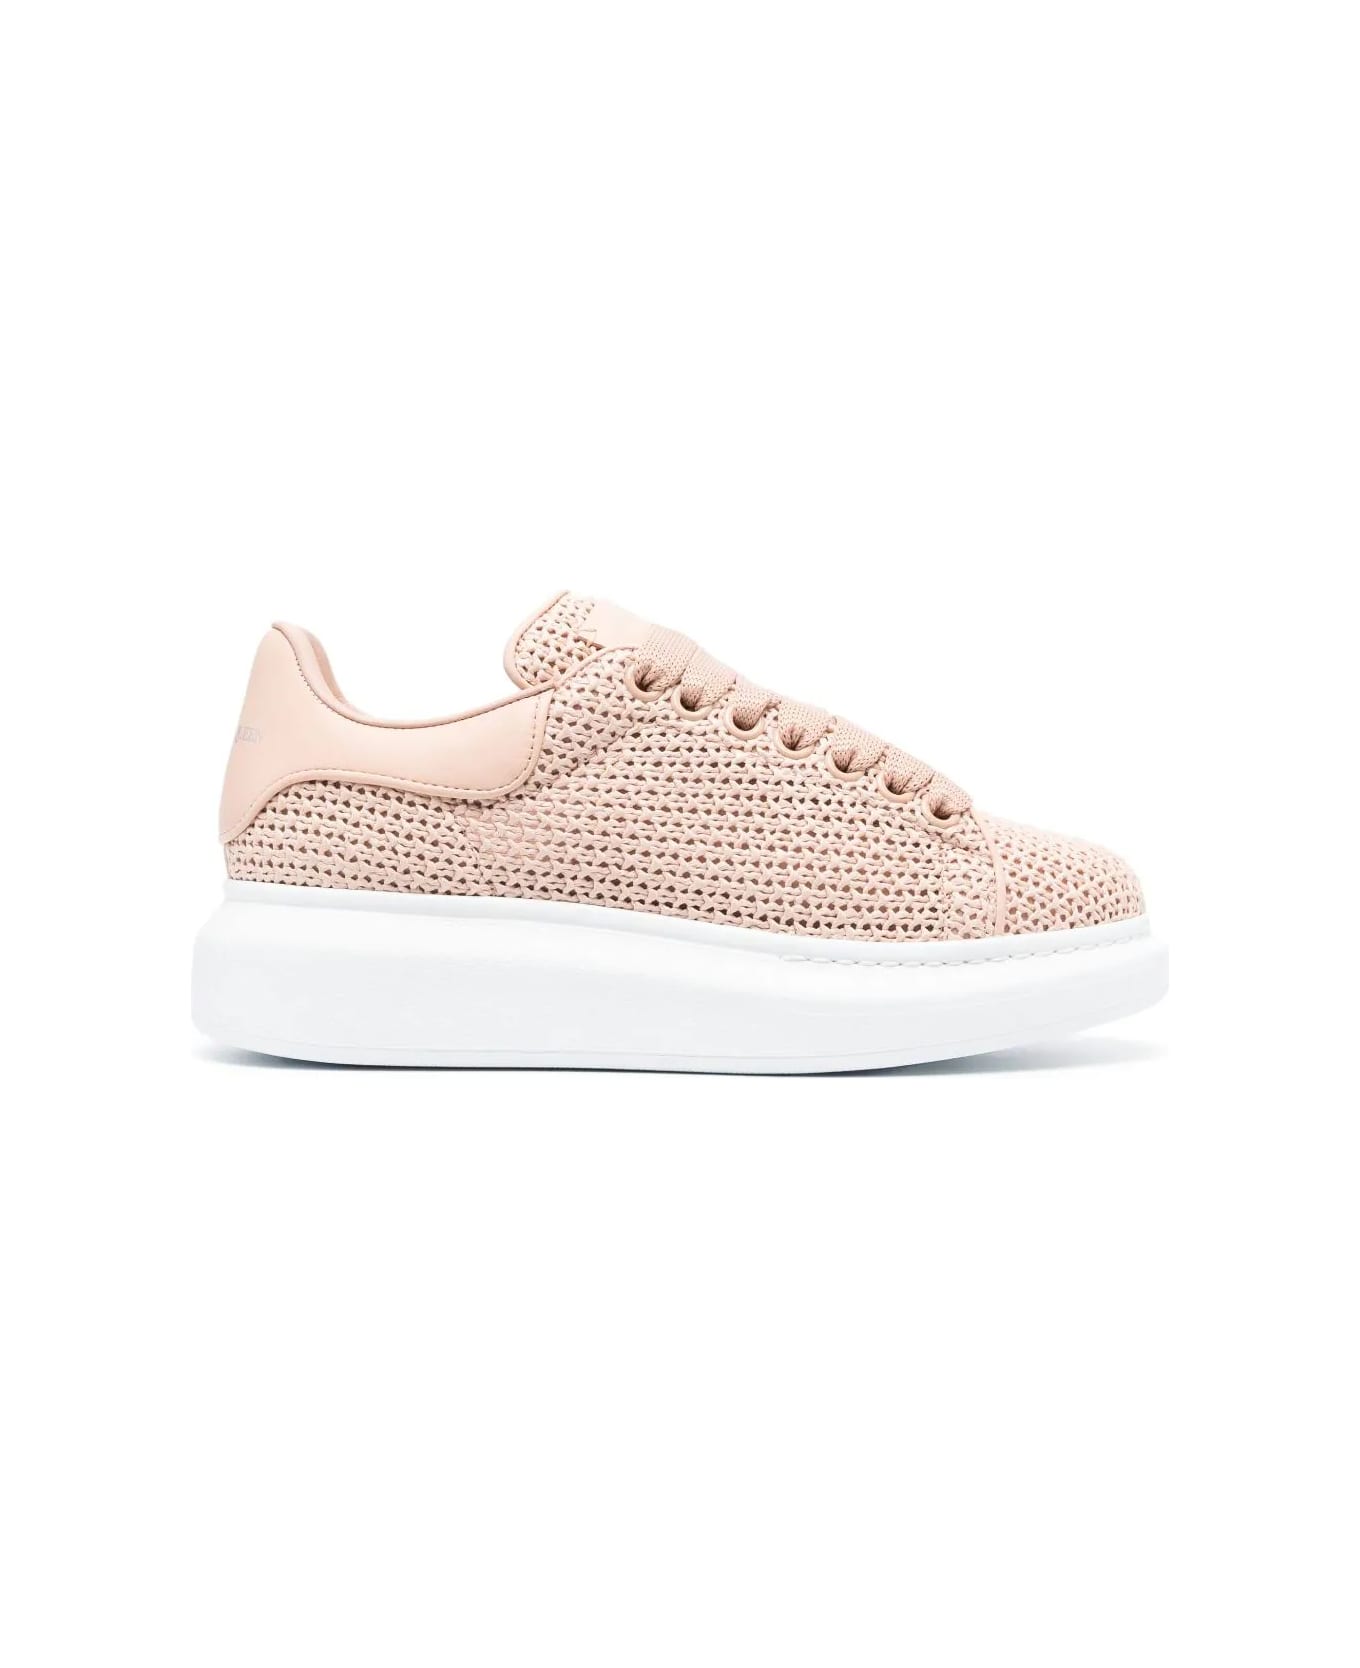 Alexander McQueen Crochet Sneakers With Leather Heel - Pink